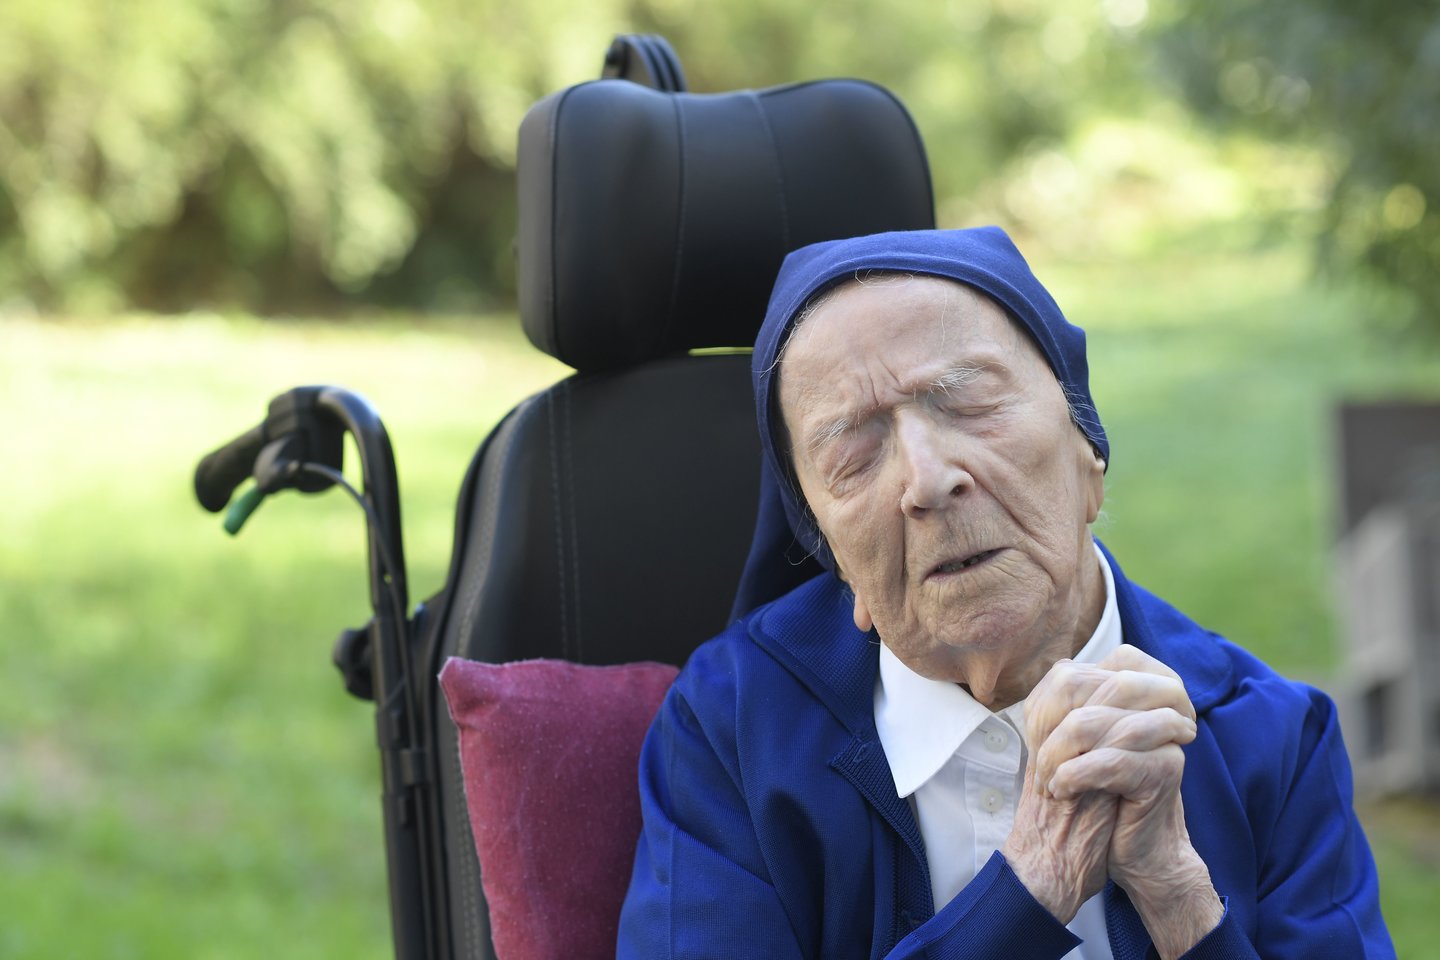 Lucile Randon laikoma seniausia Europos moterimi ir antra seniausia moterimi pasaulyje.<br>AFP/Scanpix nuotr.